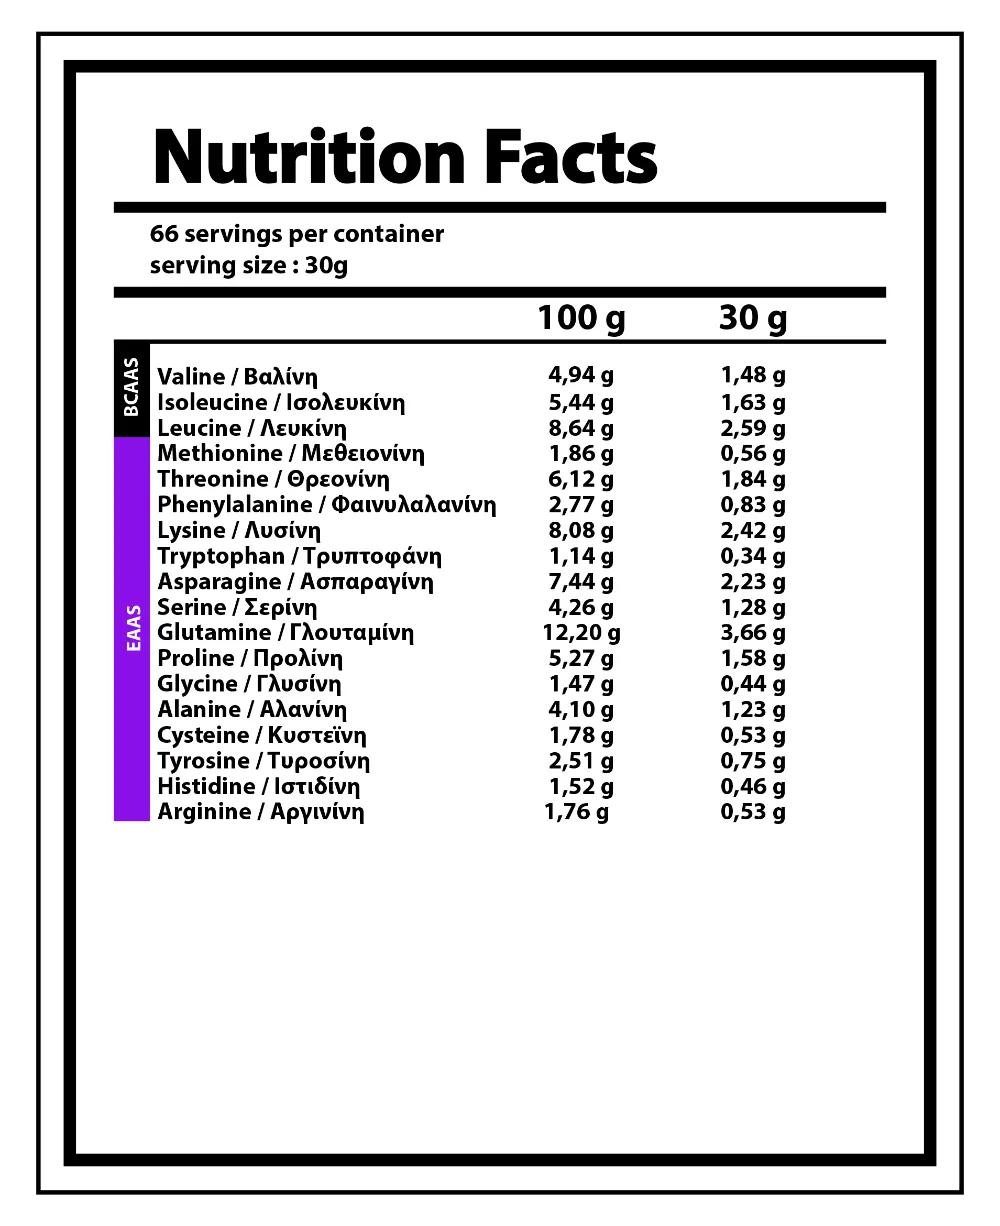 01-NY-0266 Nutrition Facts